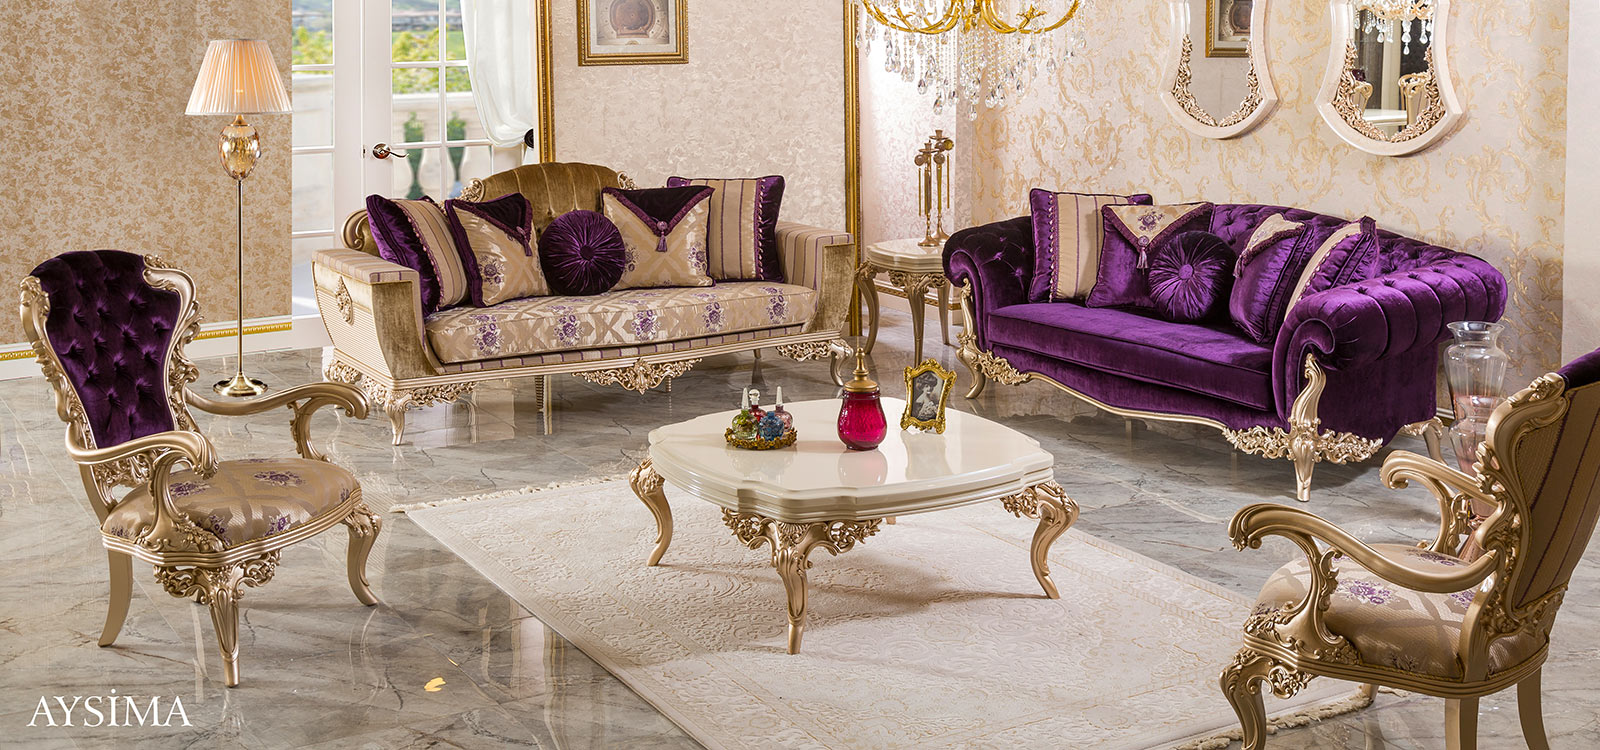 Türk klasik mobilyaları (Aysima)